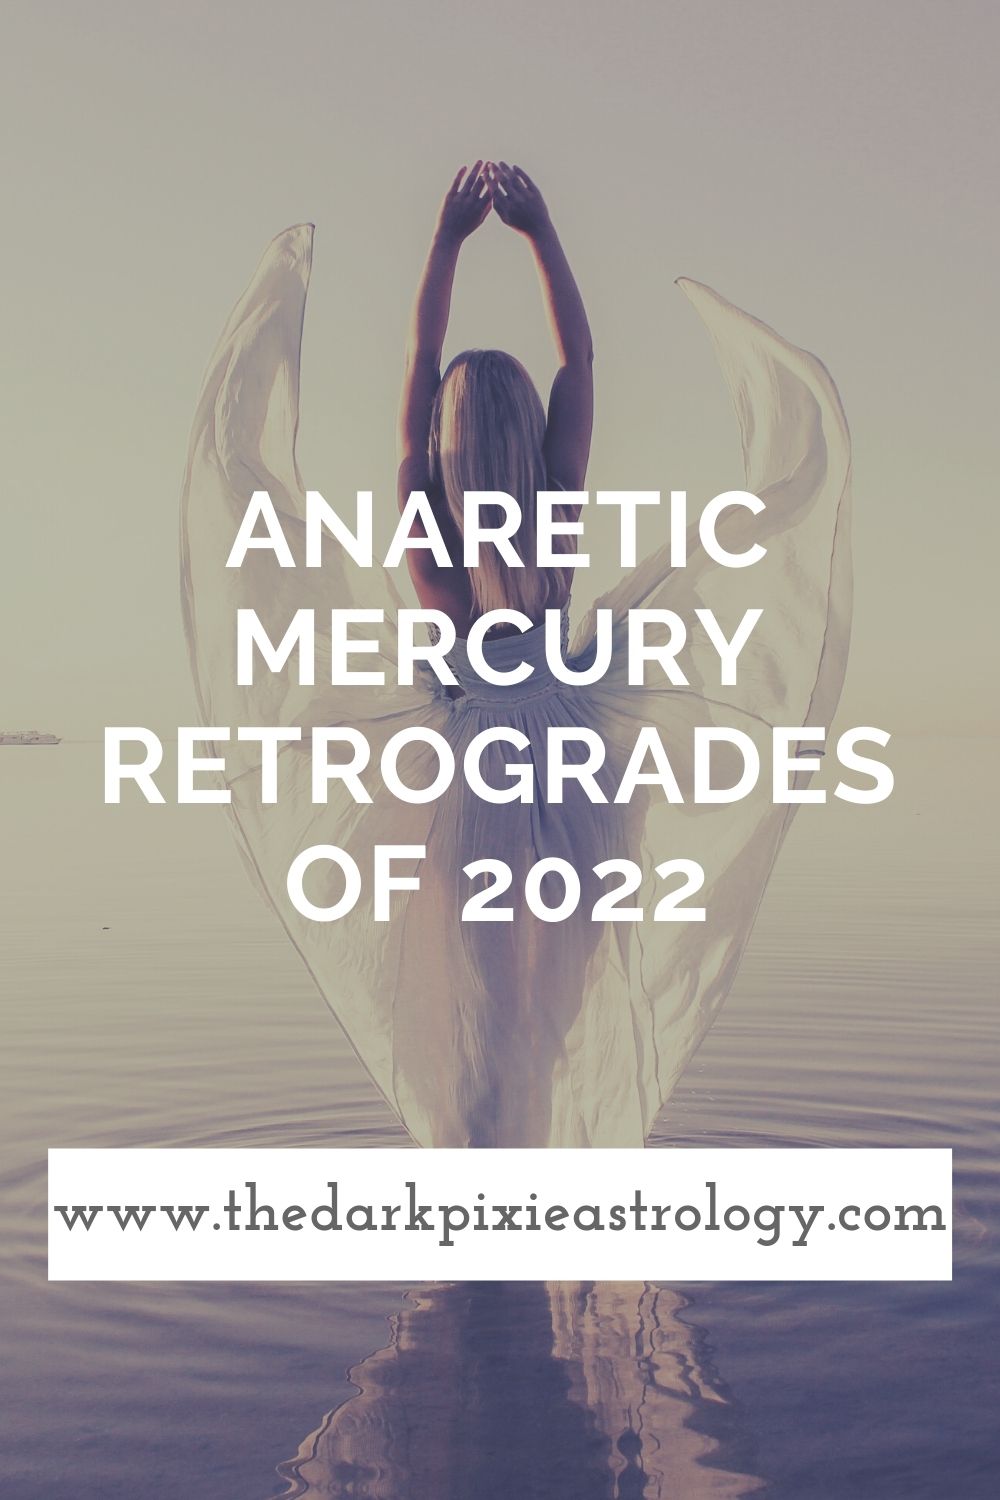 Anaretic Mercury Retrogrades of 2022 - The Dark Pixie Astrology